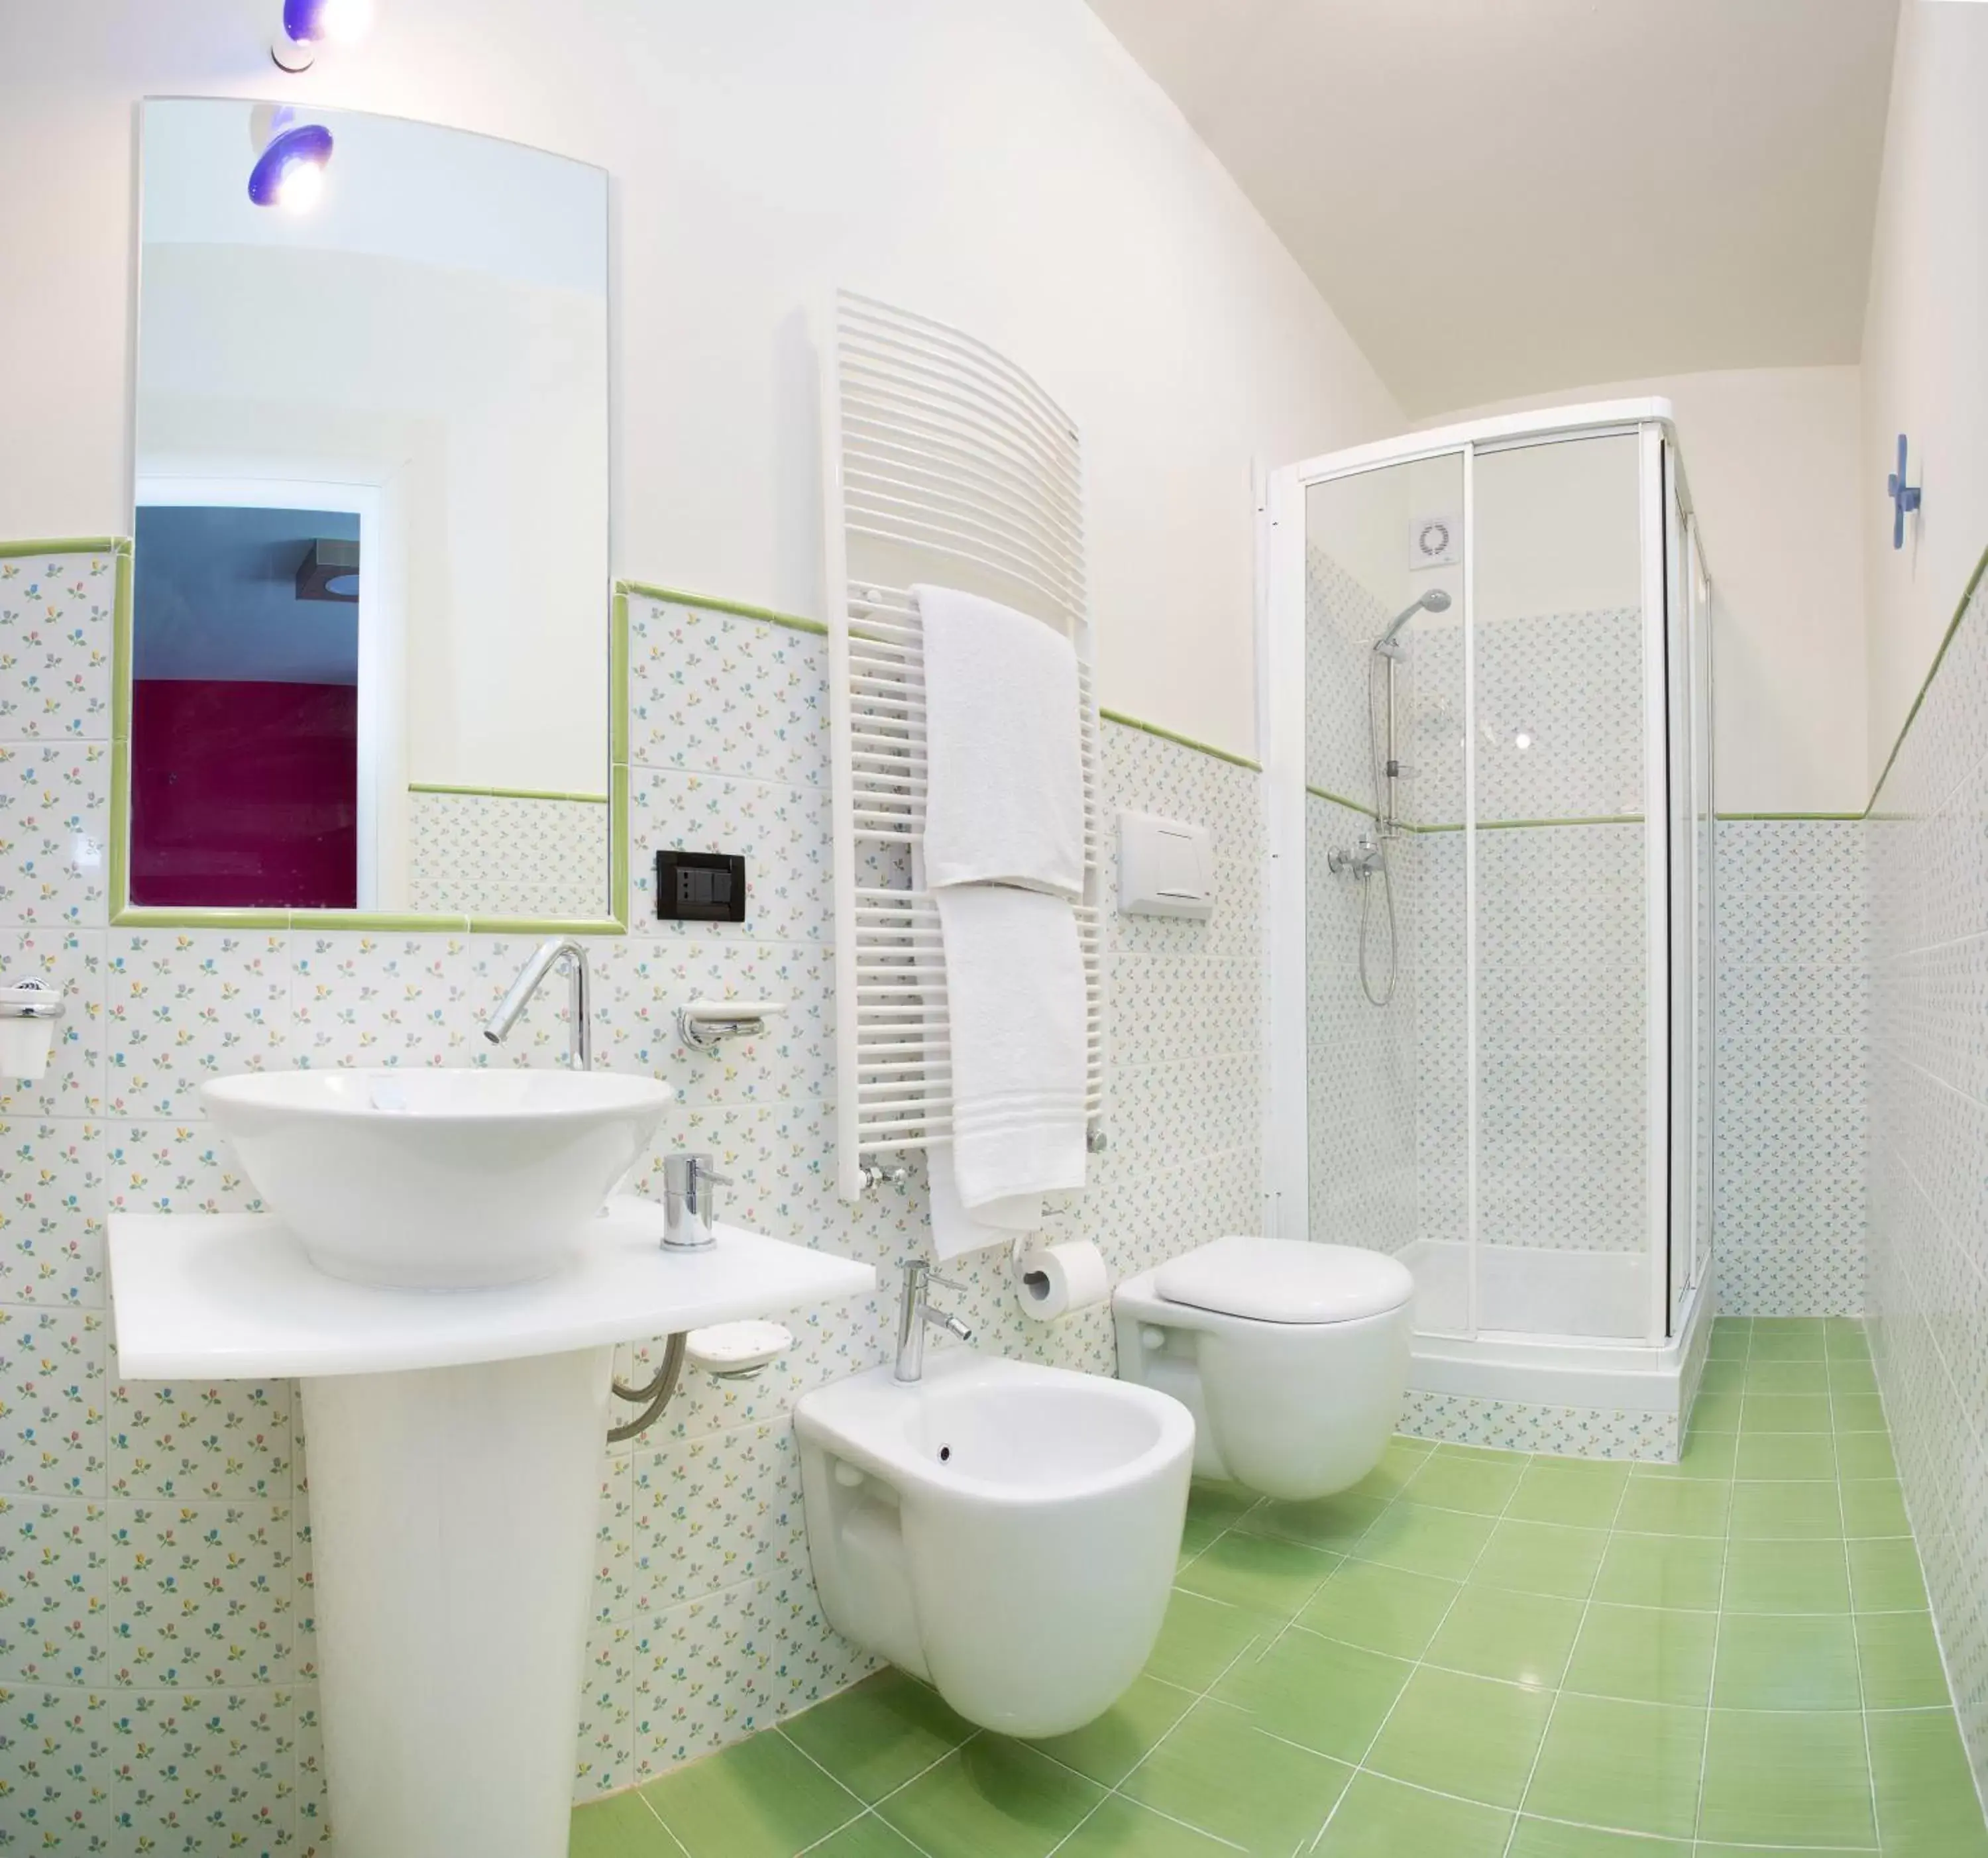 Bed, Bathroom in Le Ceramiche - Hotel Residence ed Eventi